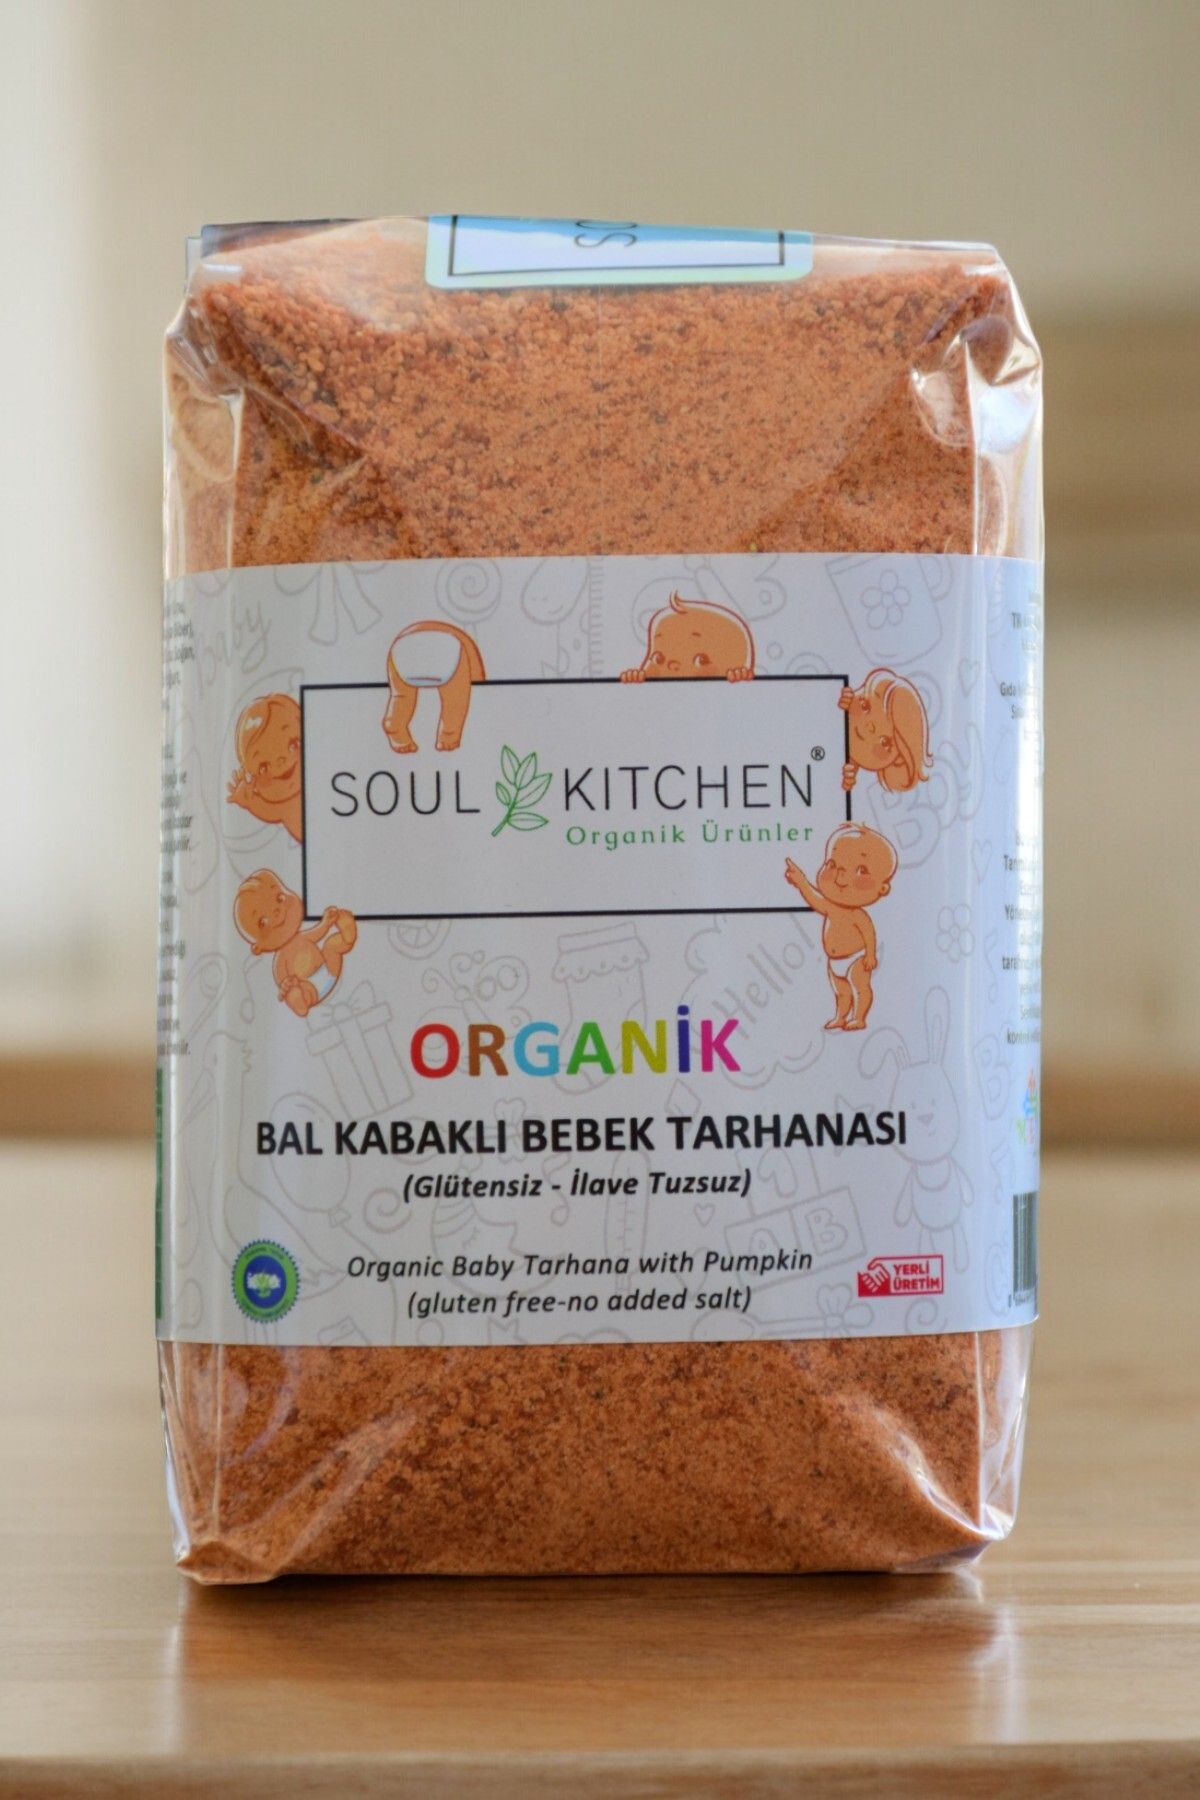 Soul Kitchen Organik Ürünler Organik Bal Kabaklı Bebek Tarhanası 250gr (Glütensiz) (İlave Tuzsuz)